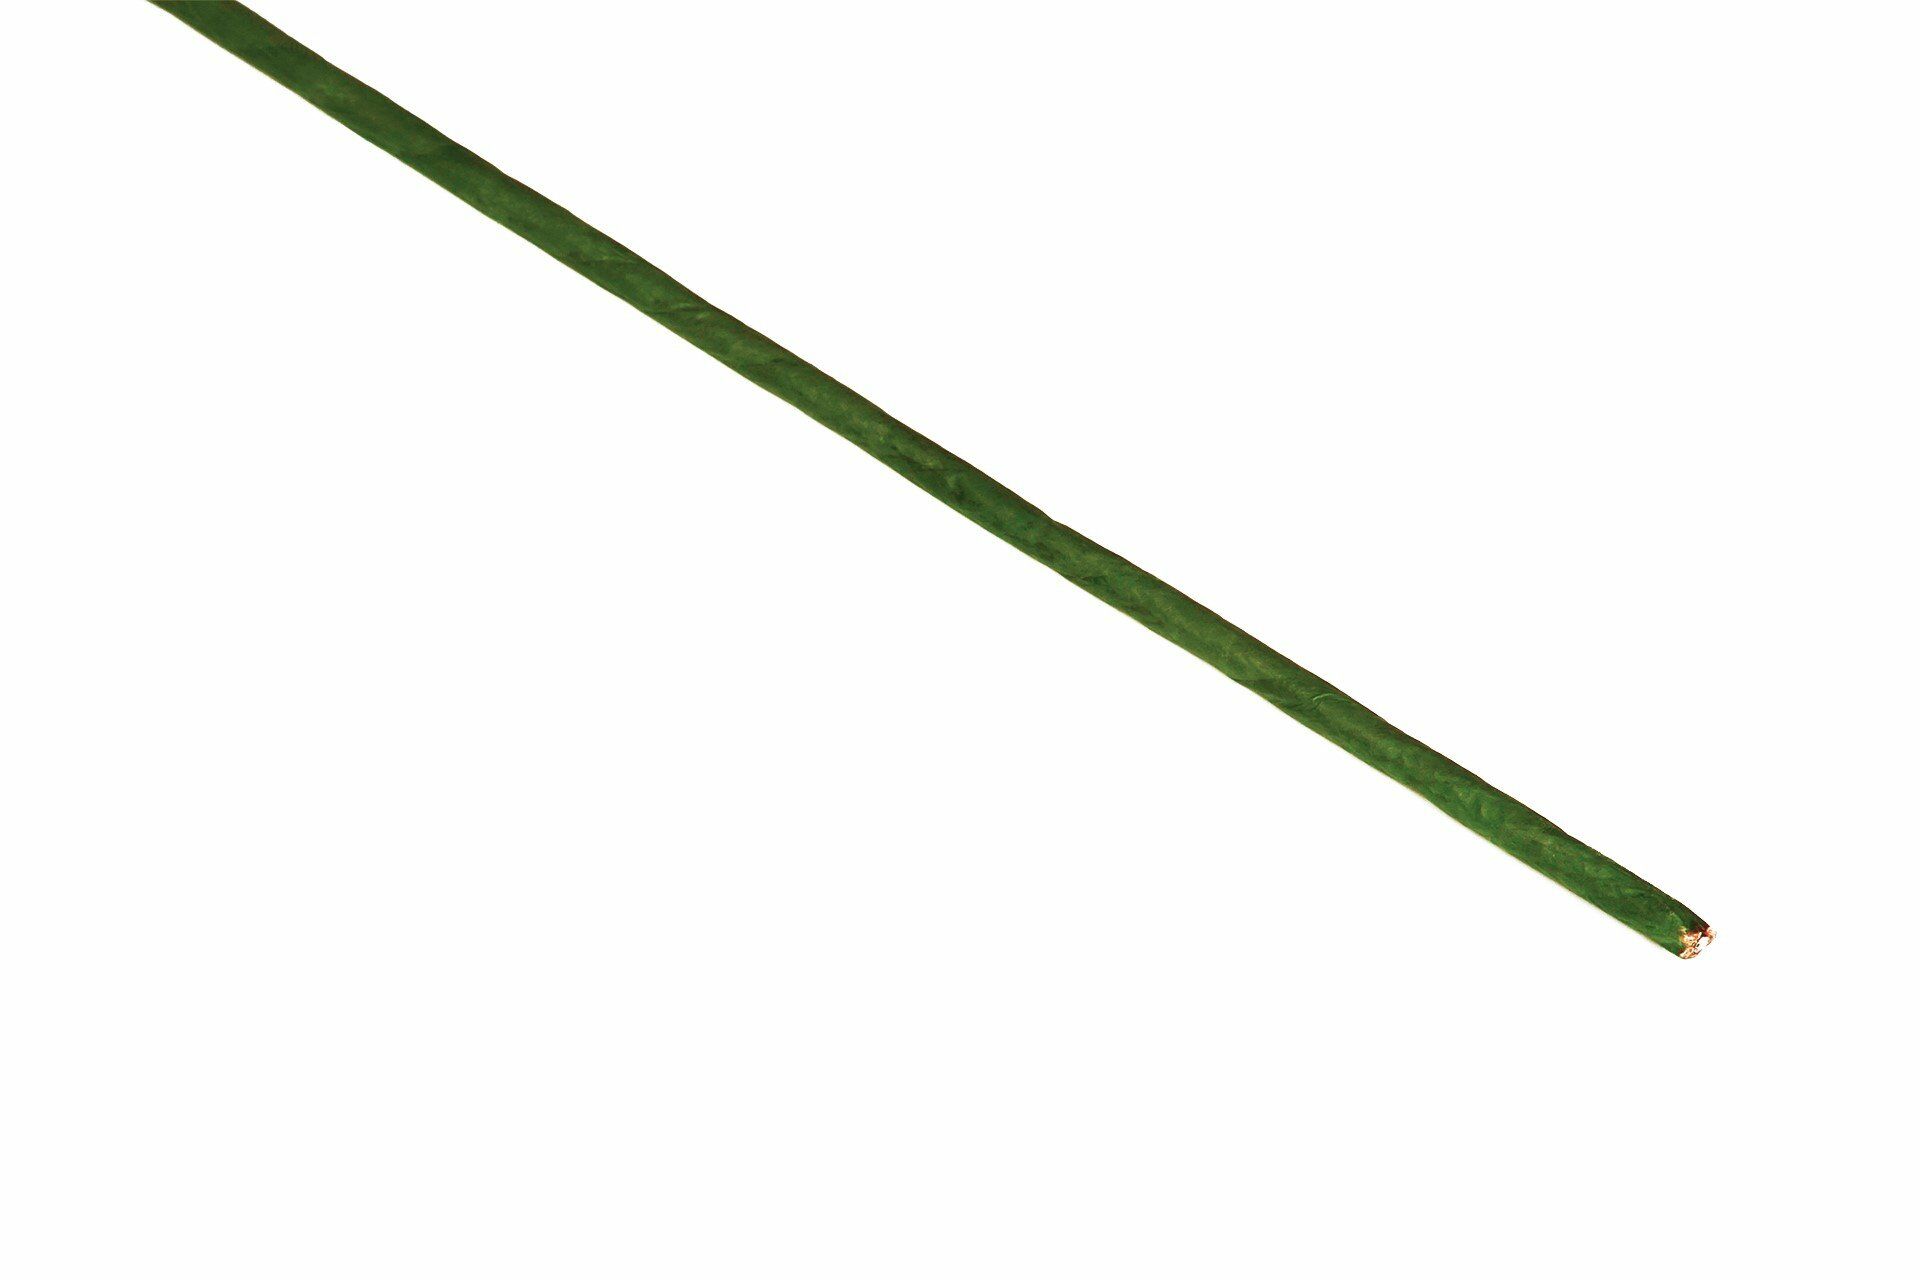 Roco Paper Çiçek Teli 7 mm. - 1 Adet 80 cm - Yeşil